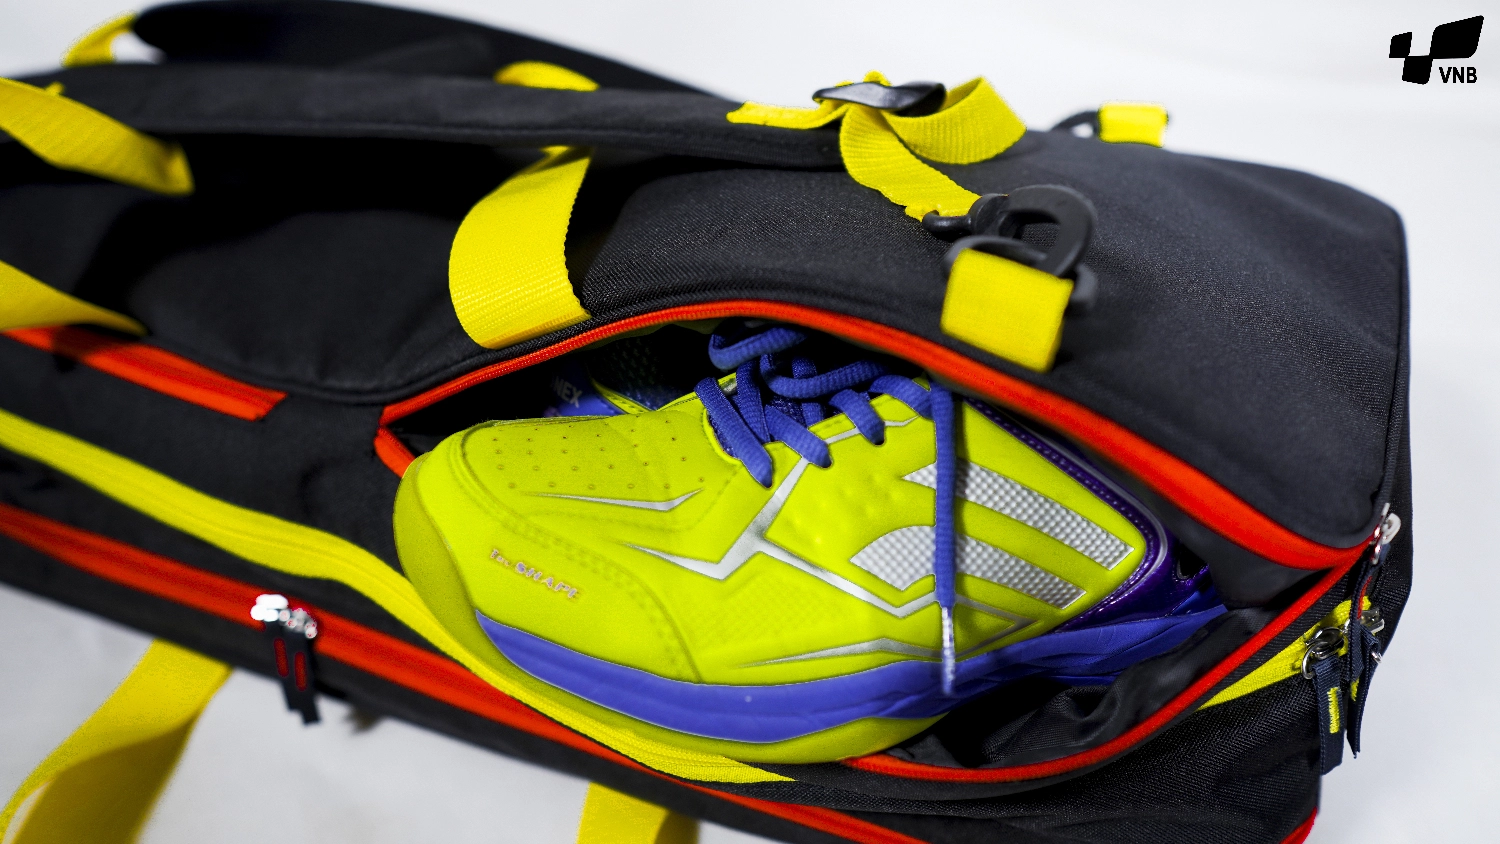 Túi đựng vợt cầu lông 3 ngăn giá rẻ VNB Bag 2020